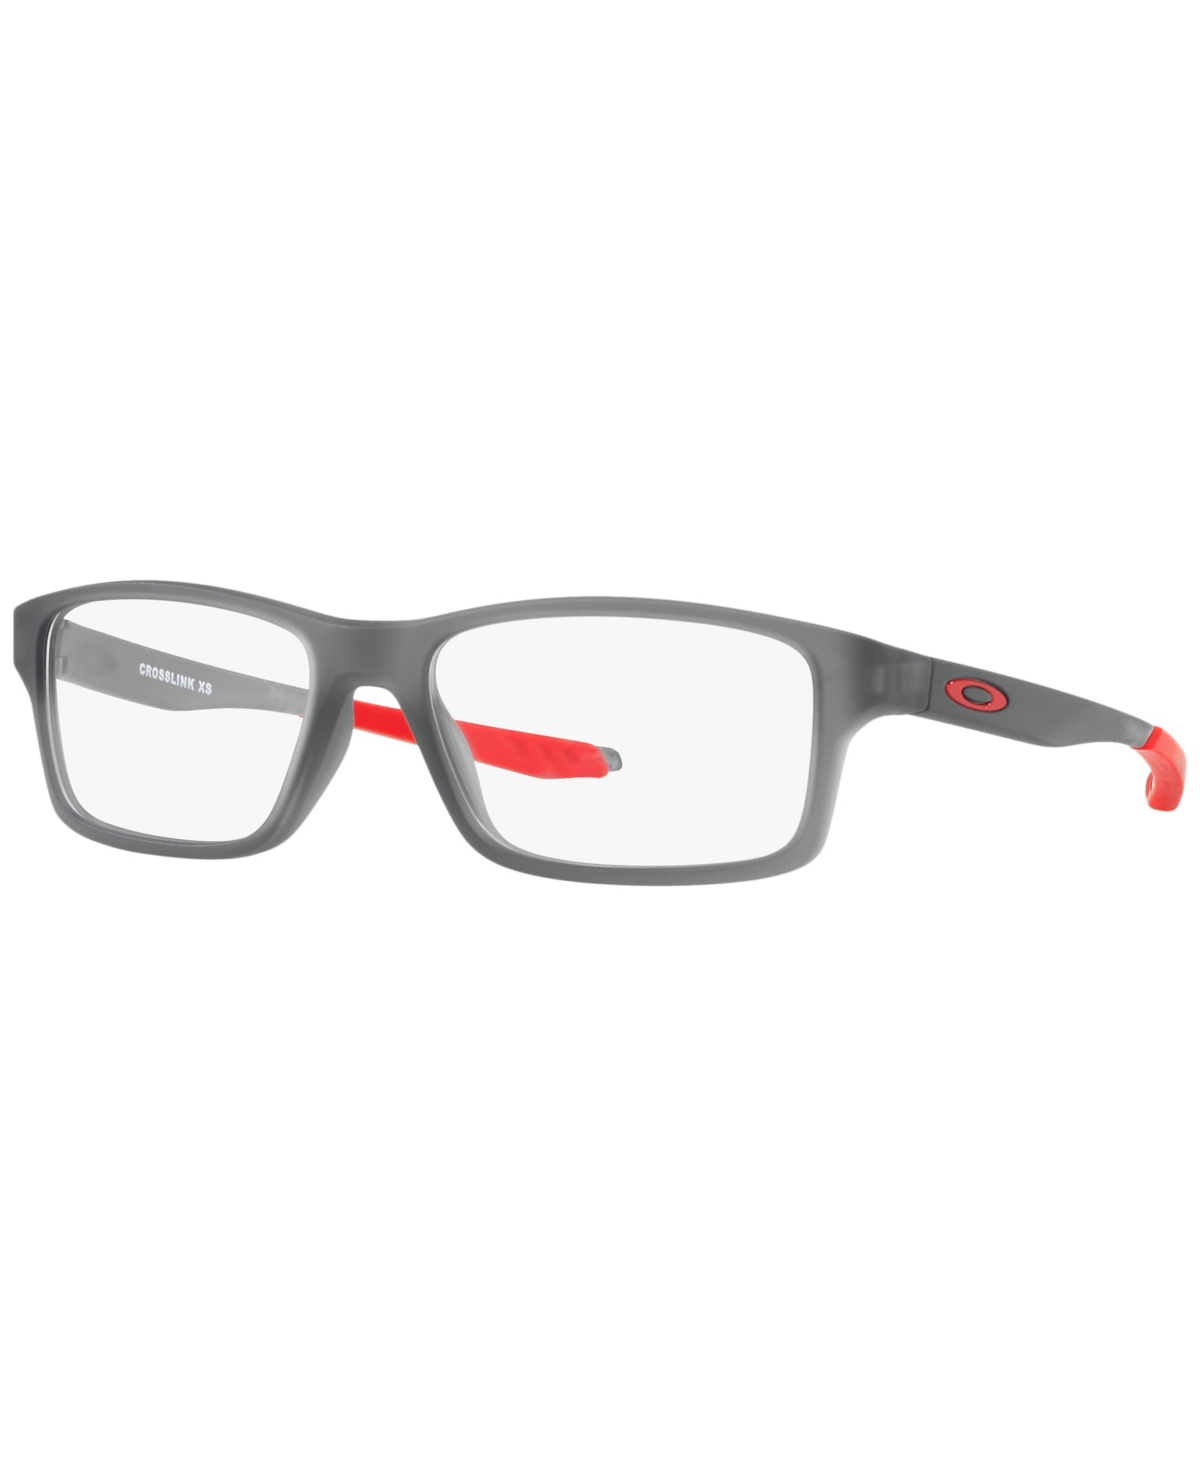 Child Crosslink Xs Youth Fit Eyeglasses, OY8002 - Satin Gray Smoke